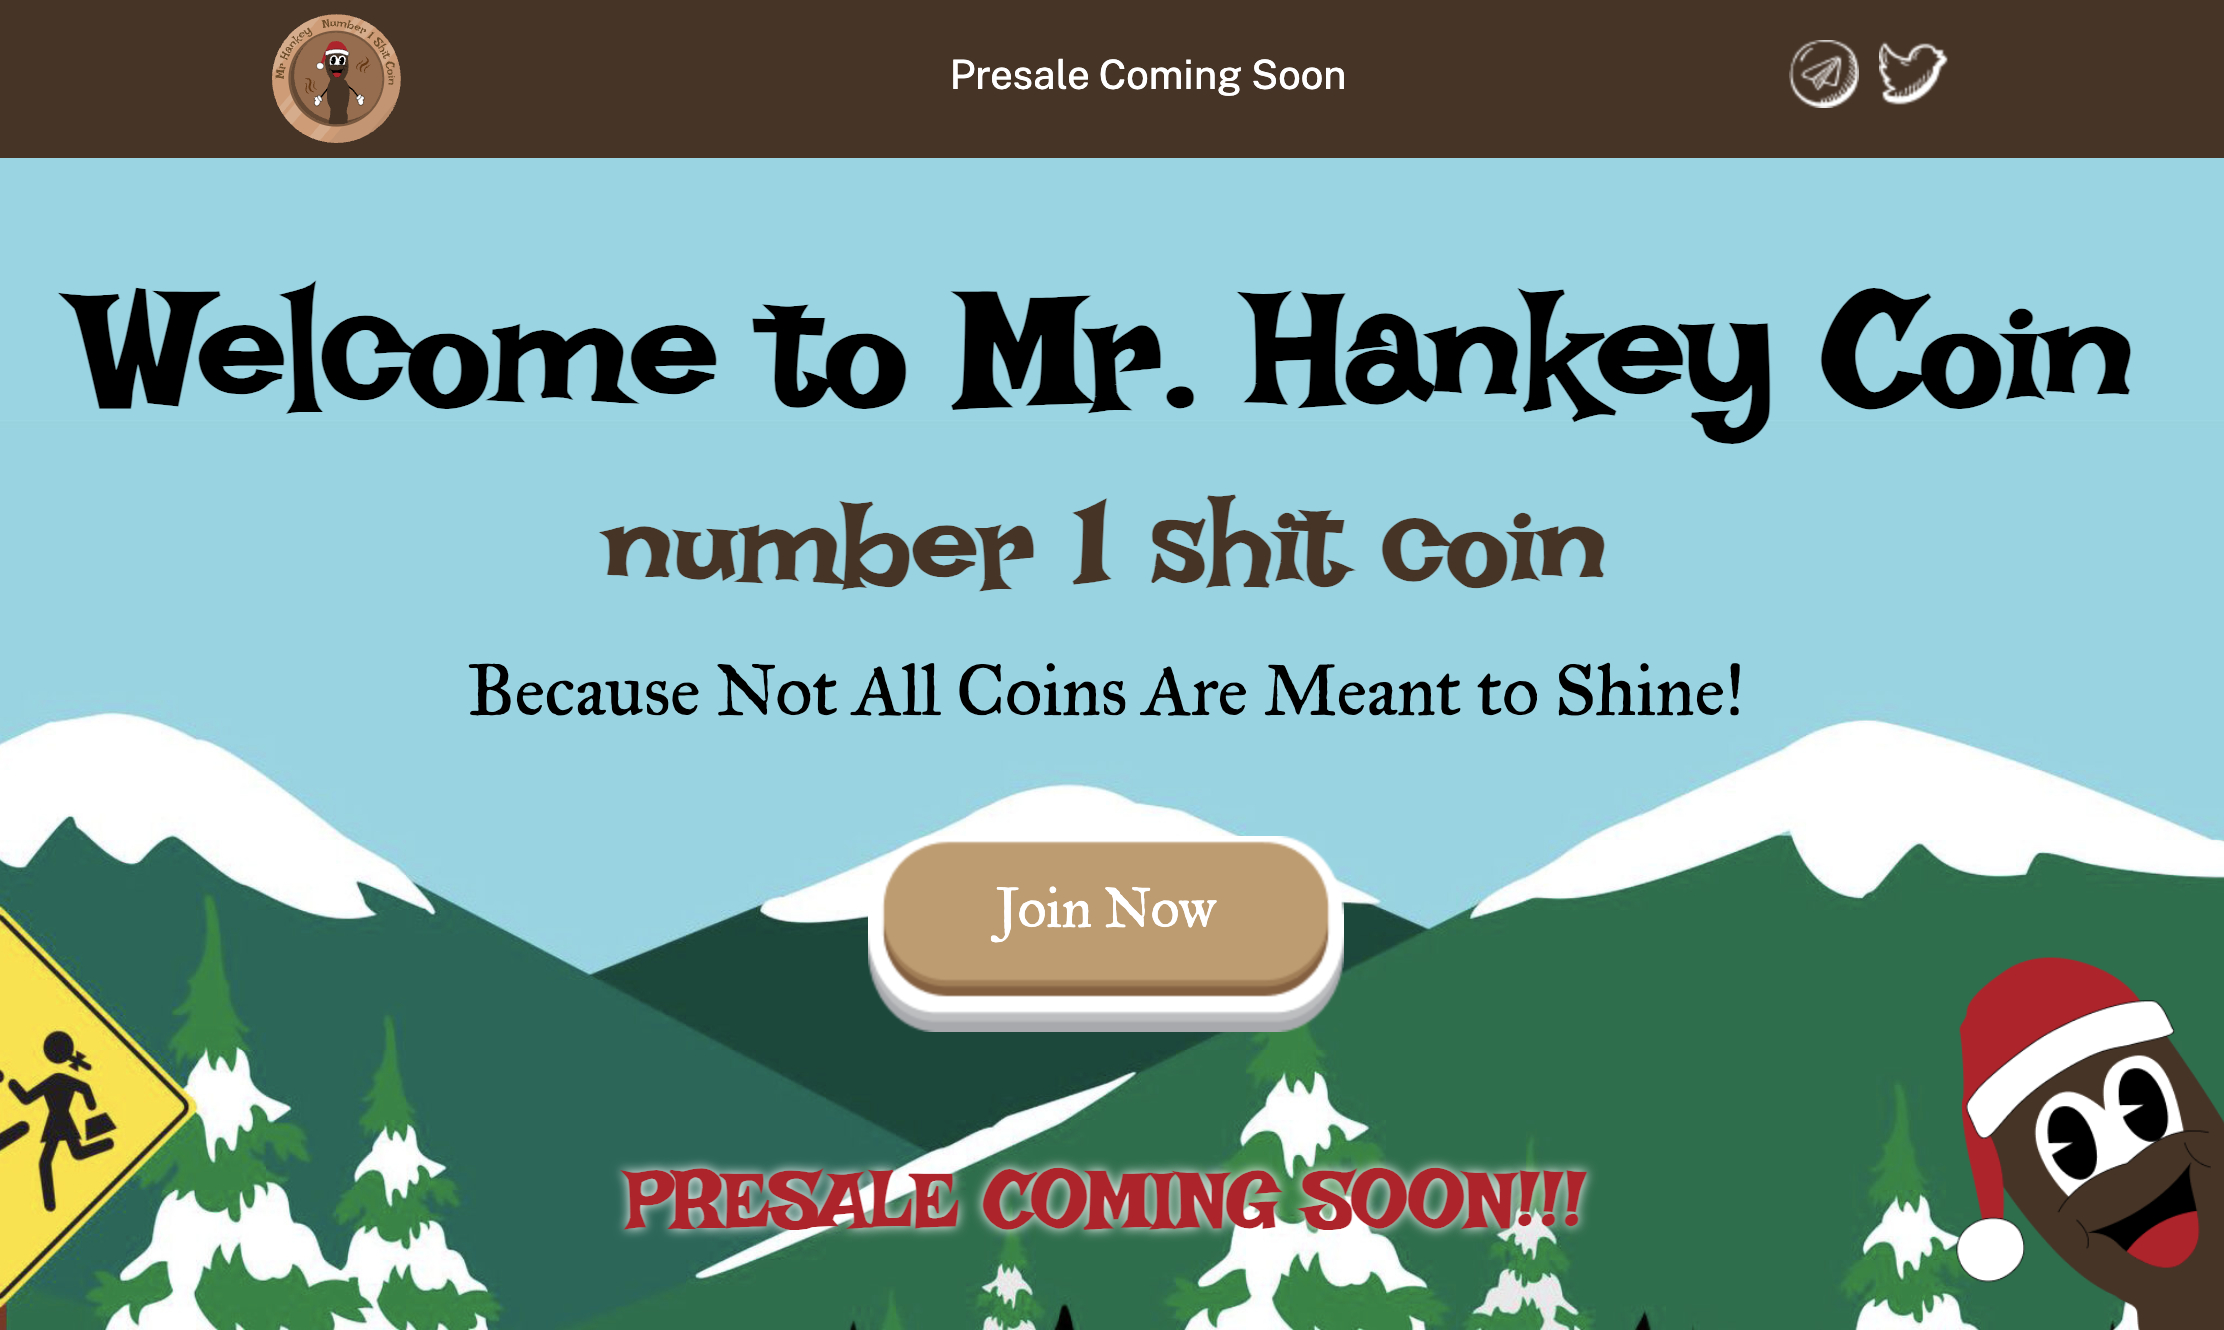  Viral criptomoneda que promete grandes beneficios en pre-lanzamiento. ¡Invierte temprano en Mr Hankey Coin!